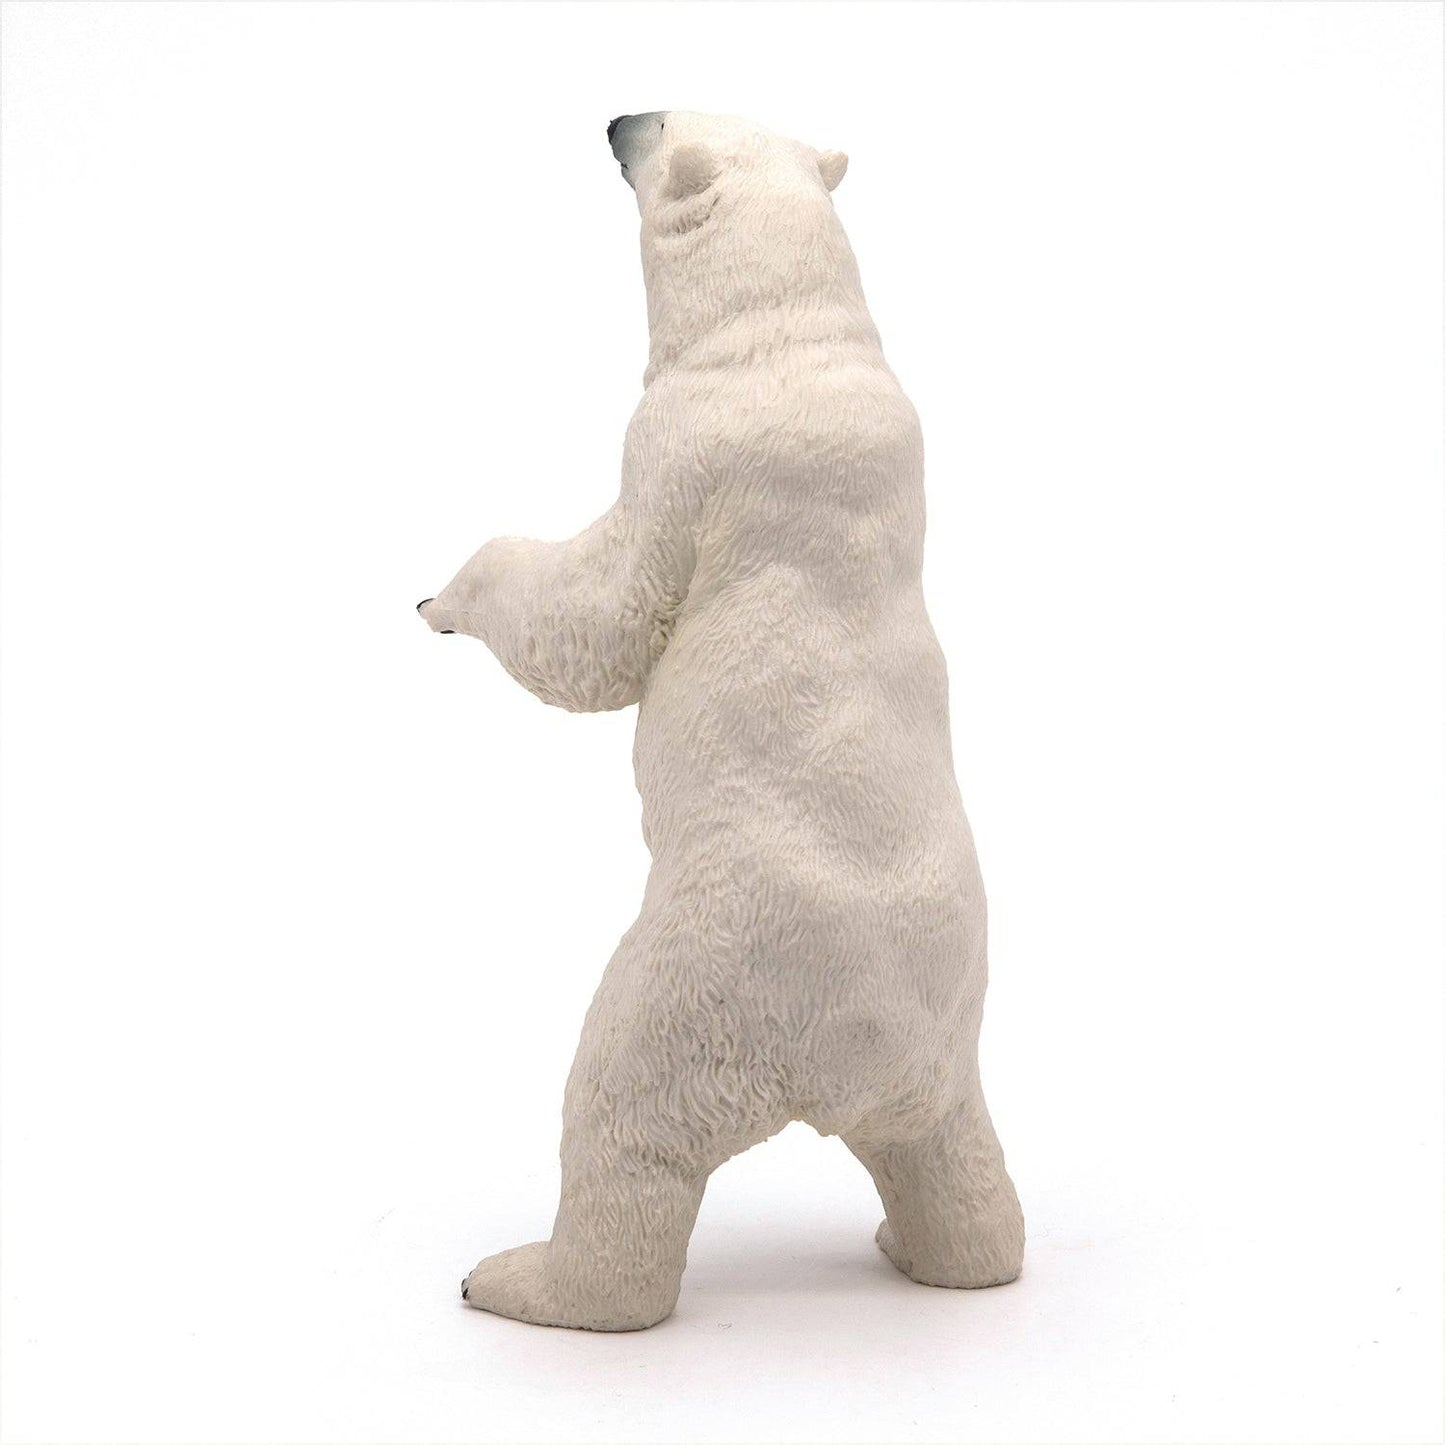 Figurine ours polaire debout - Maison Continuum